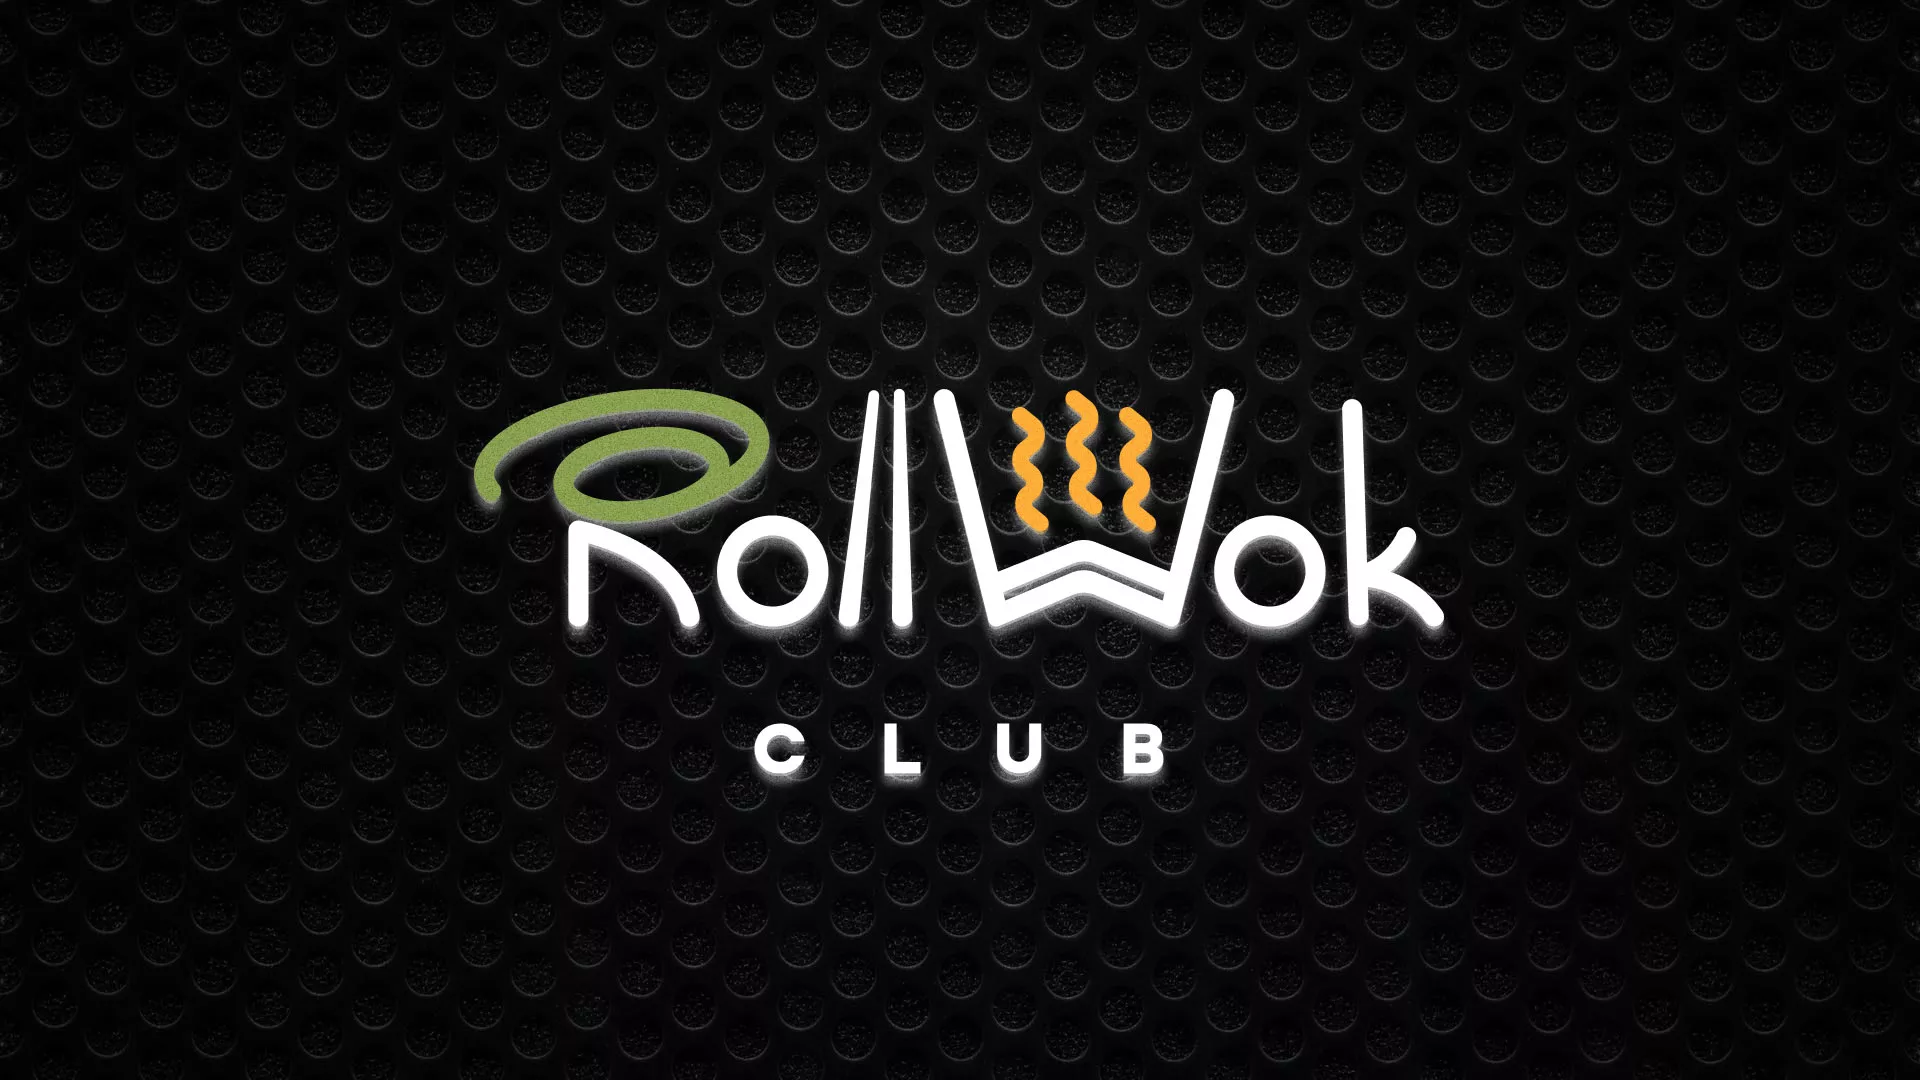 Брендирование торговых точек суши-бара «Roll Wok Club» в Прохладном